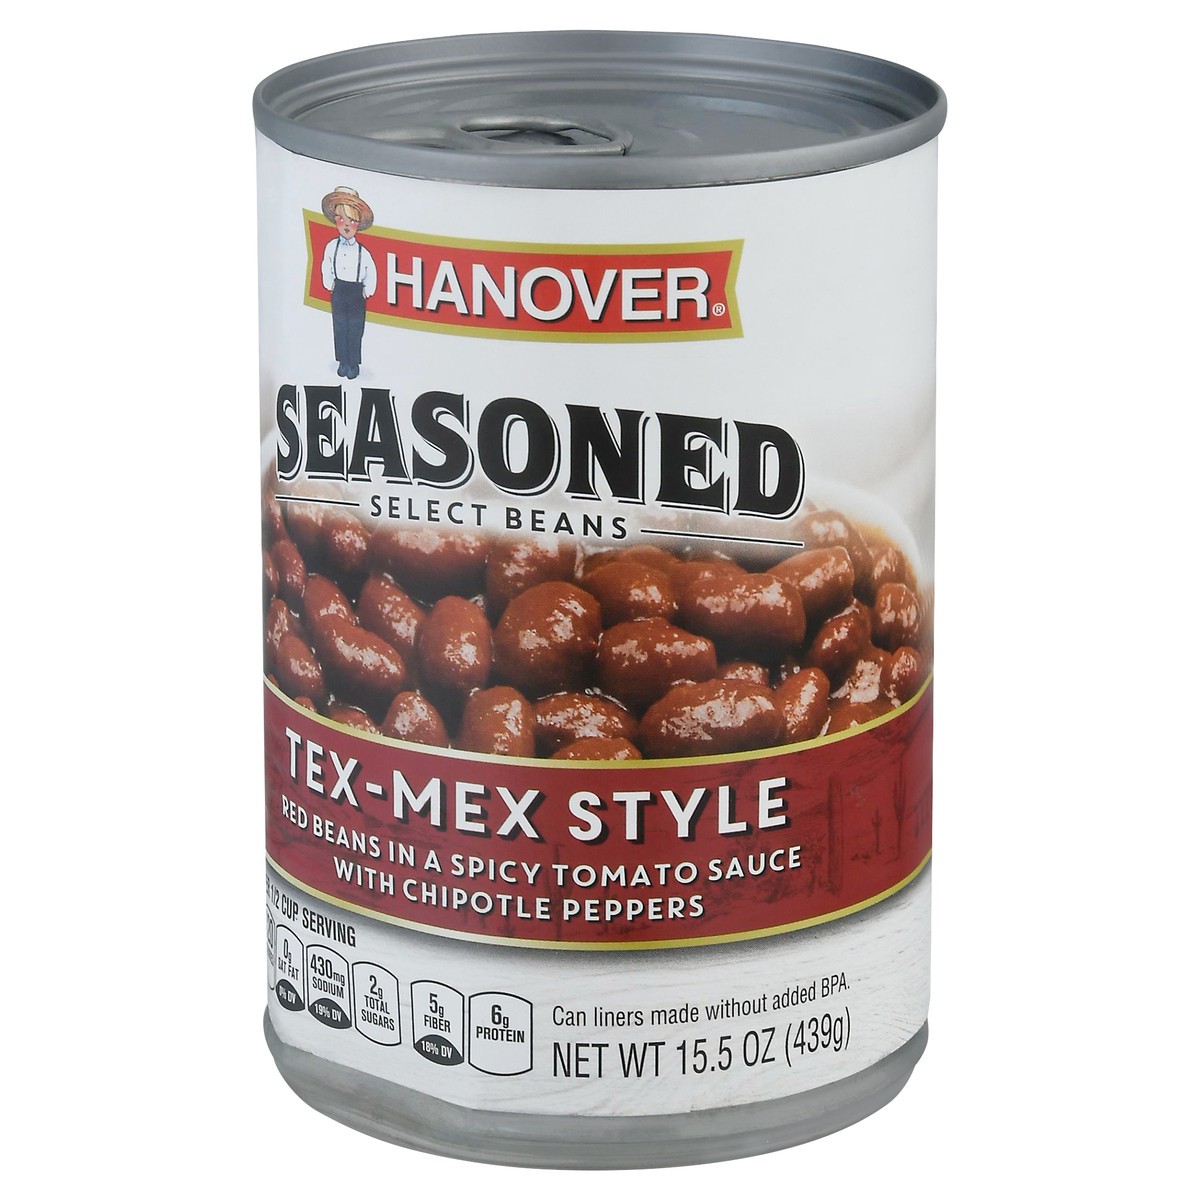 slide 6 of 14, Hanover Tex-Mex Style Seasoned Select Beans 15.5 oz, 15.5 oz